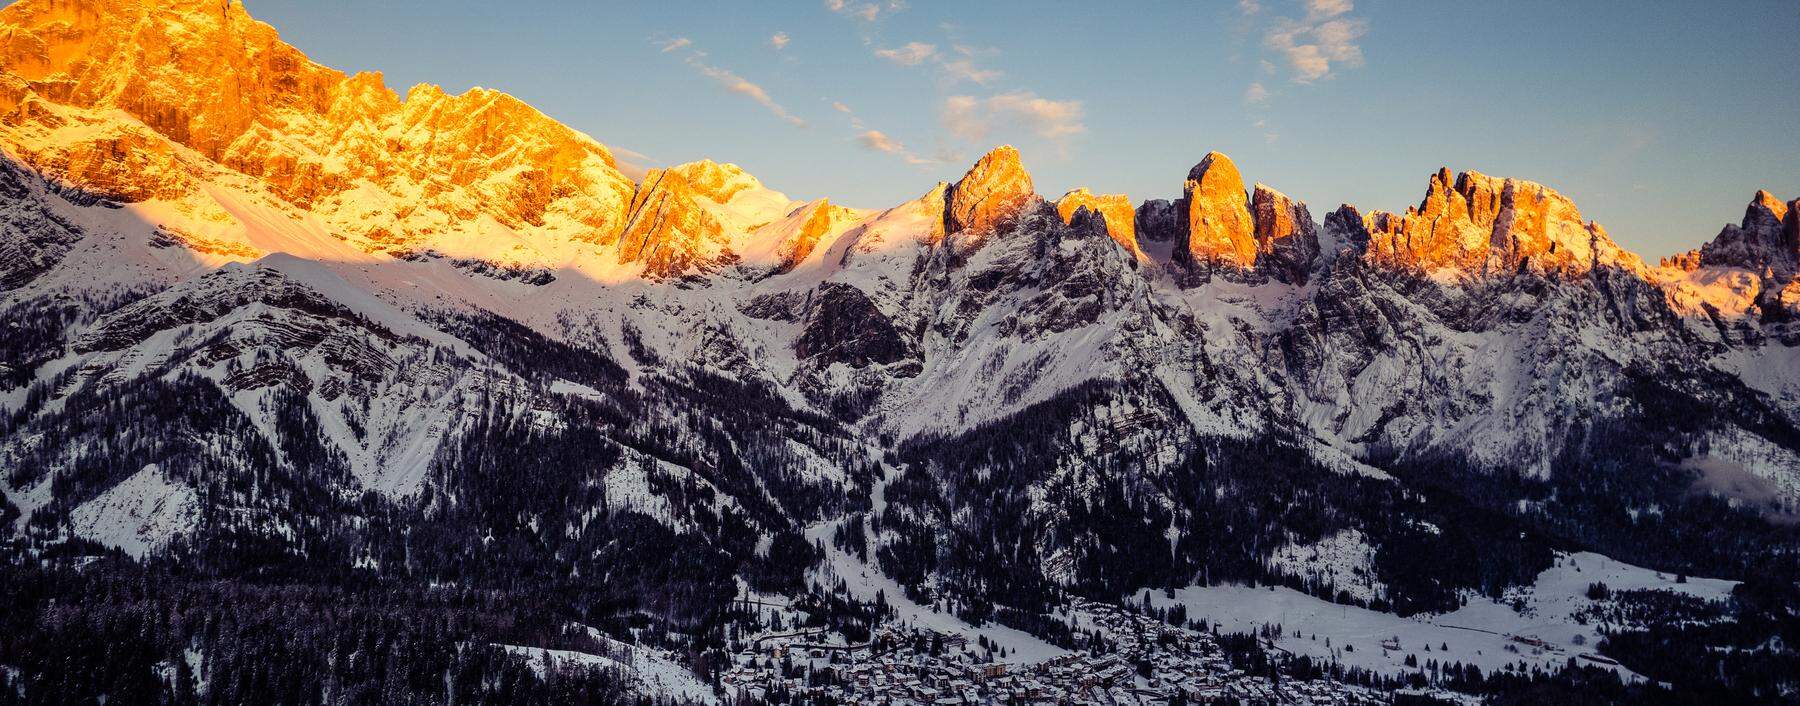 Enrosadira, das Dolomiten-typische Alpenglühen, lässt sich auch rund um San Martino di Castrozza und die Pala-Gruppe beobachten.